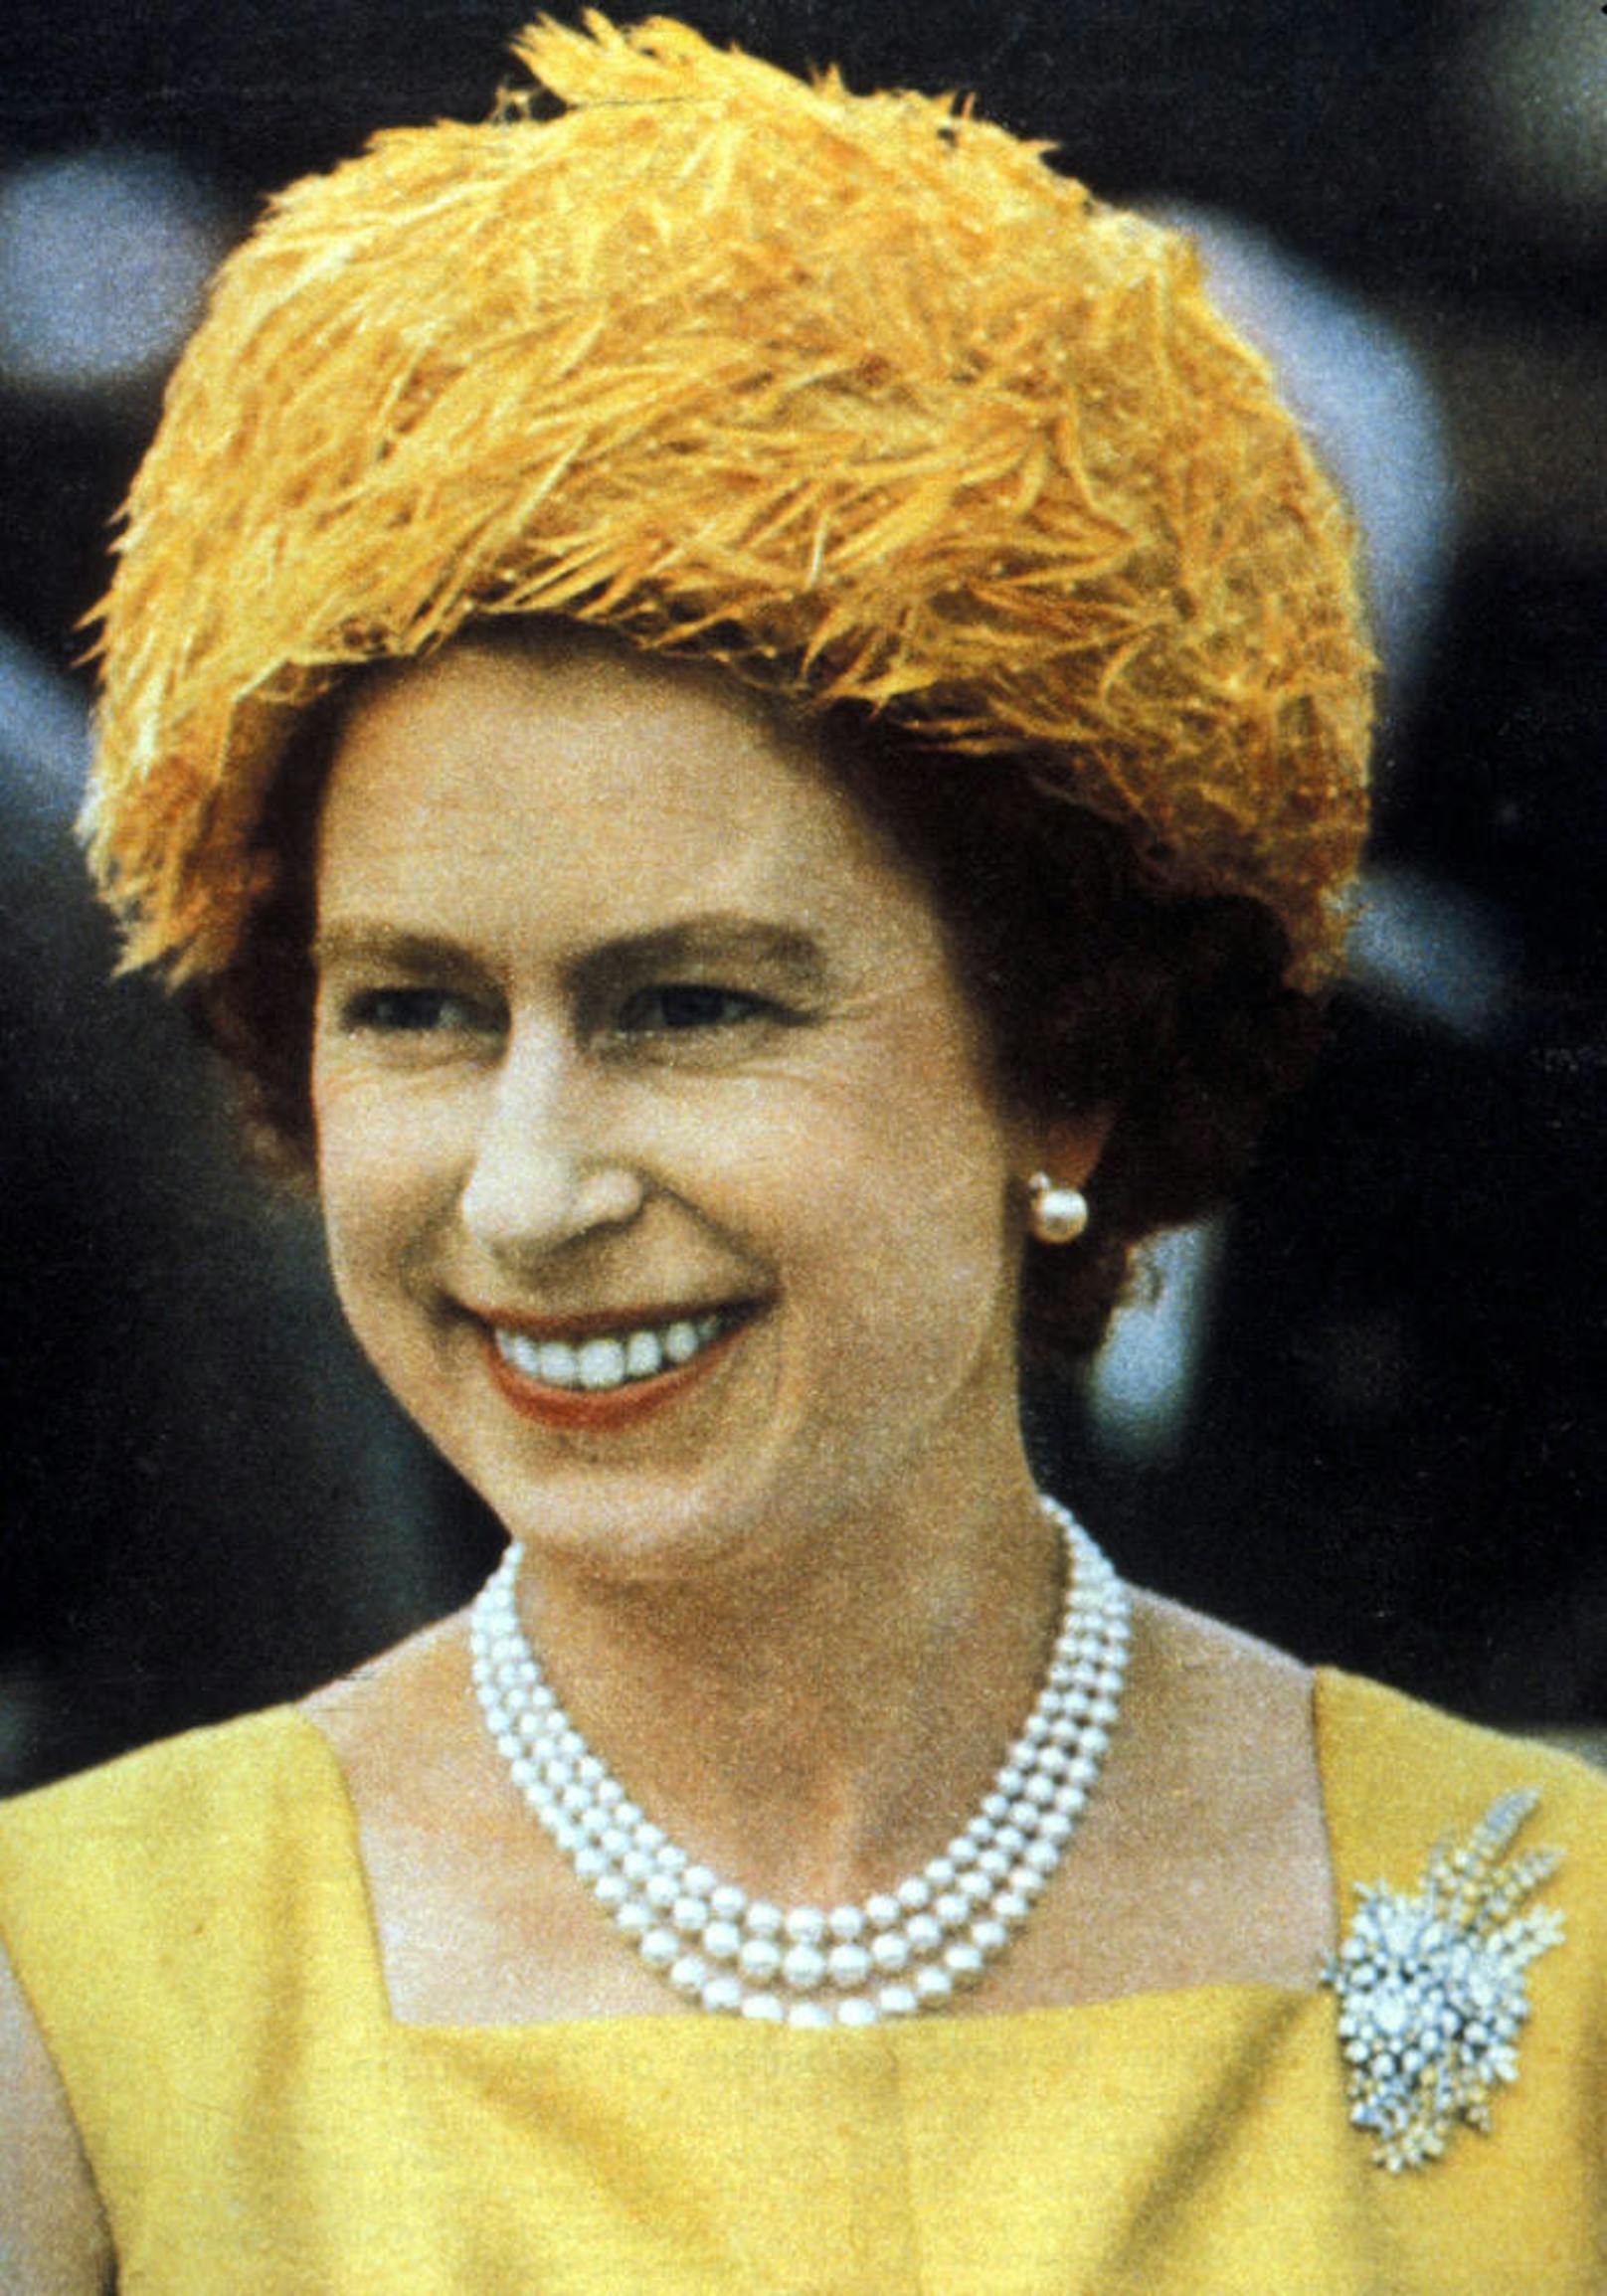 Die Königin und ihr Gemahl sind beide Ururenkel von Queen Victoria, die "Großmutter Europas" genannt wurde. Auch der deutsche Kaiser Wilhelm II. war ihr Enkel. 

Foto: 
1966 - Queen Elizabeth II (Elizabeth Alexandra Mary Windsor) befindet sich auf Auslandsreise in Indien.